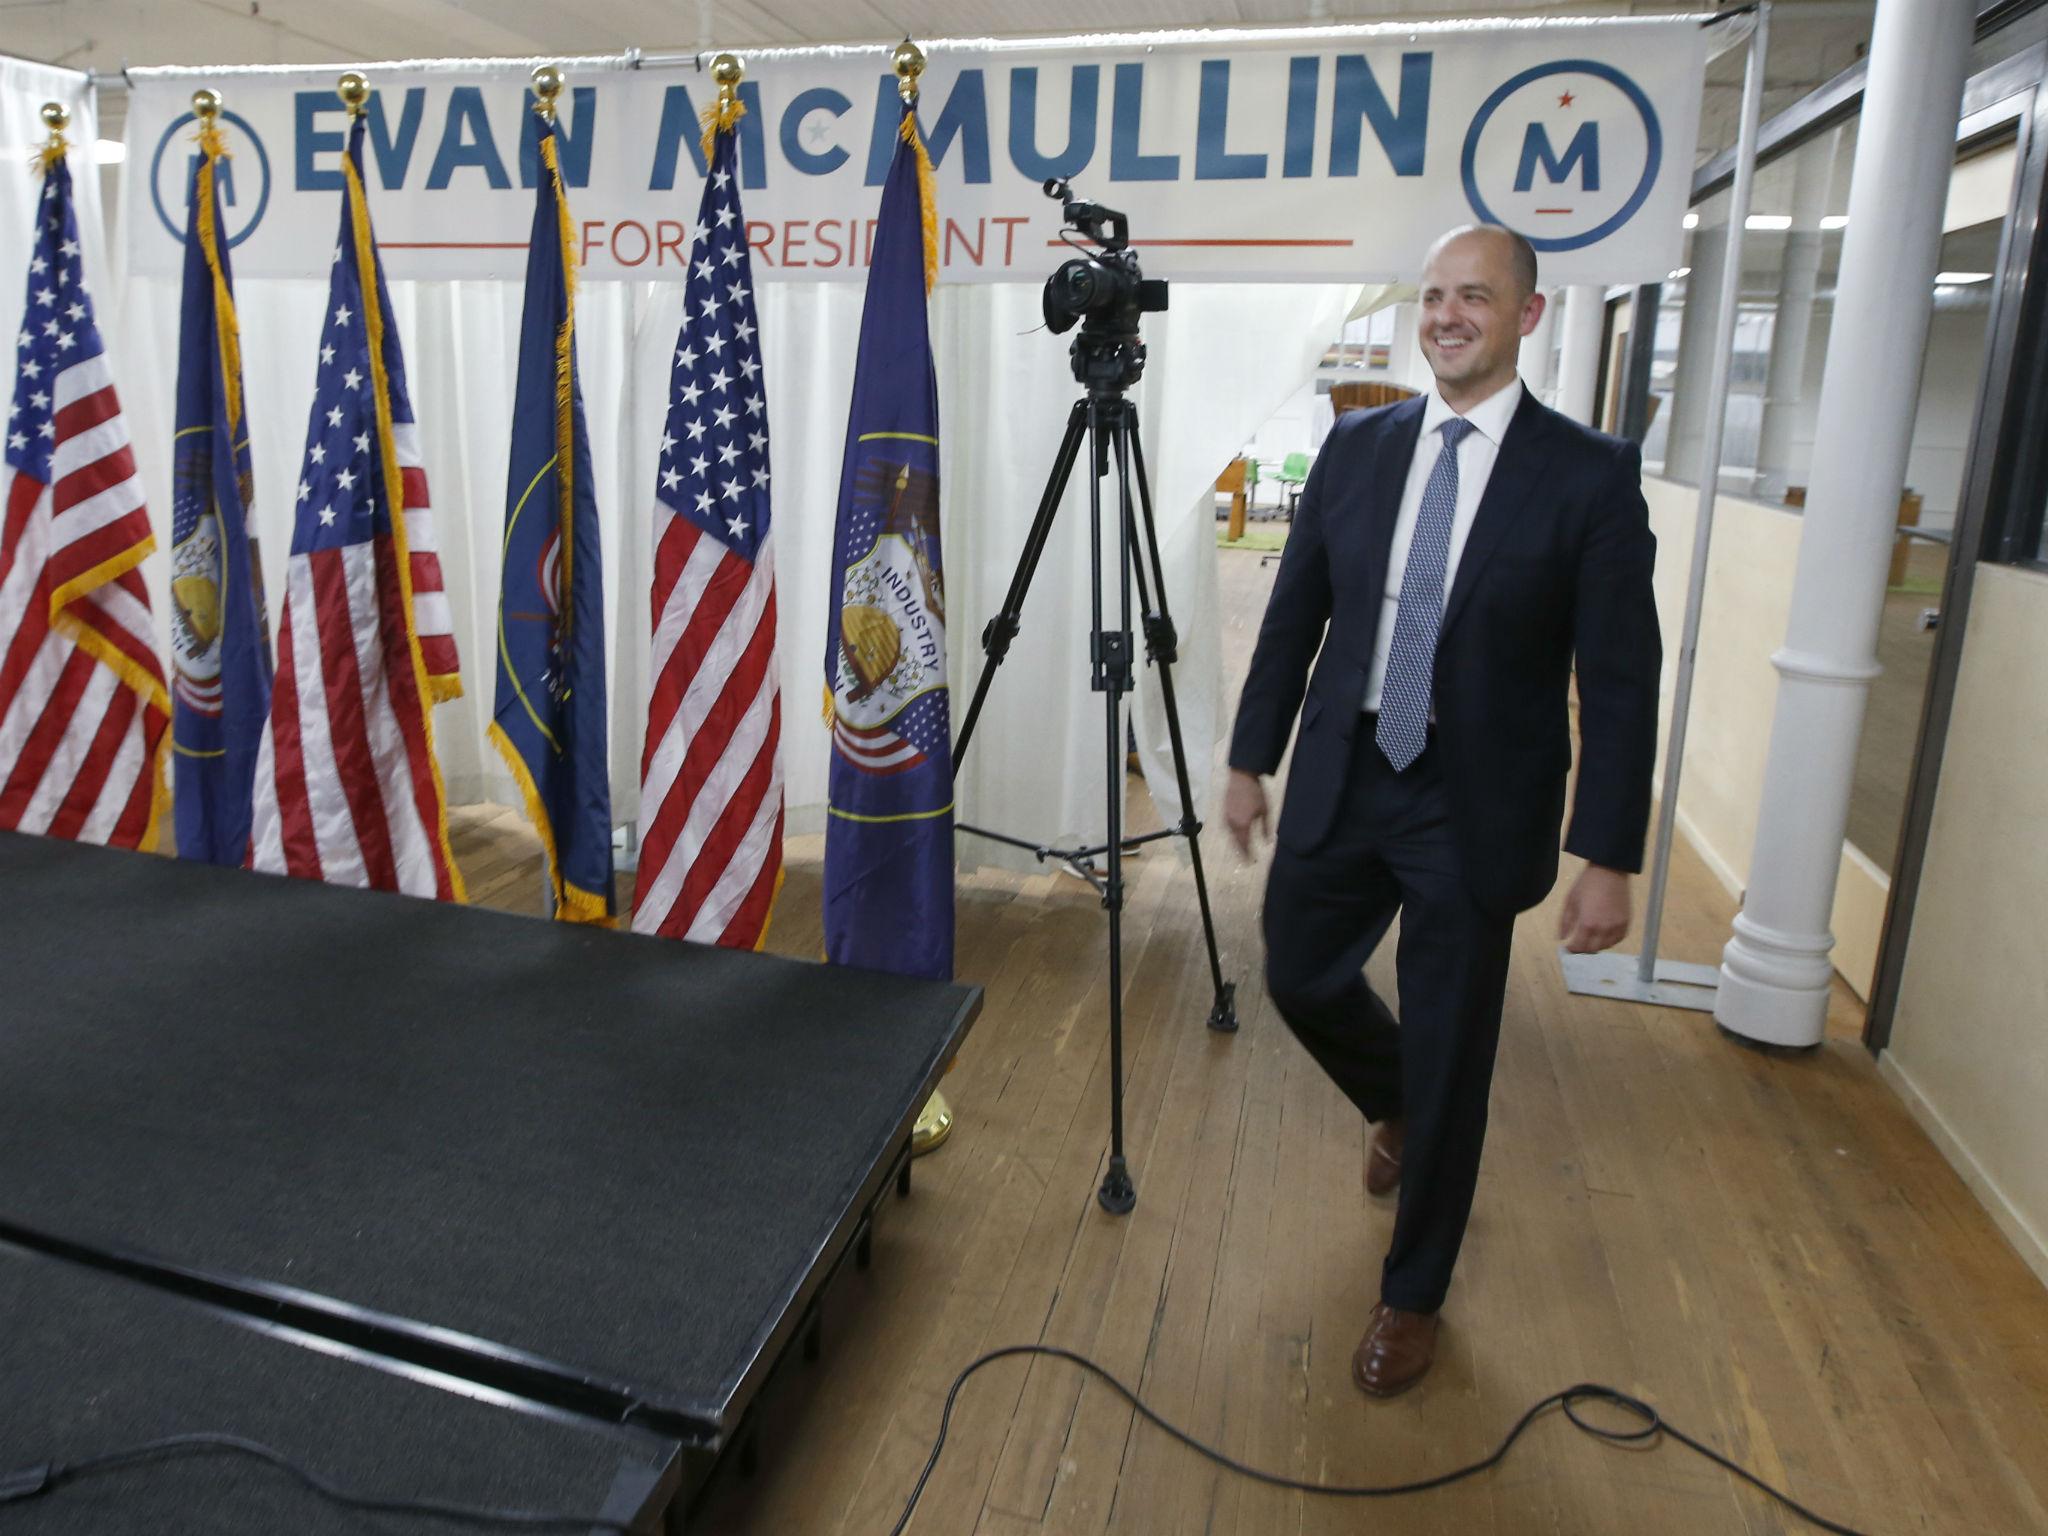 McMullin lanzó su candidatura hace unos meses al sentirse repelido por la retórica “intolerante” de Trump